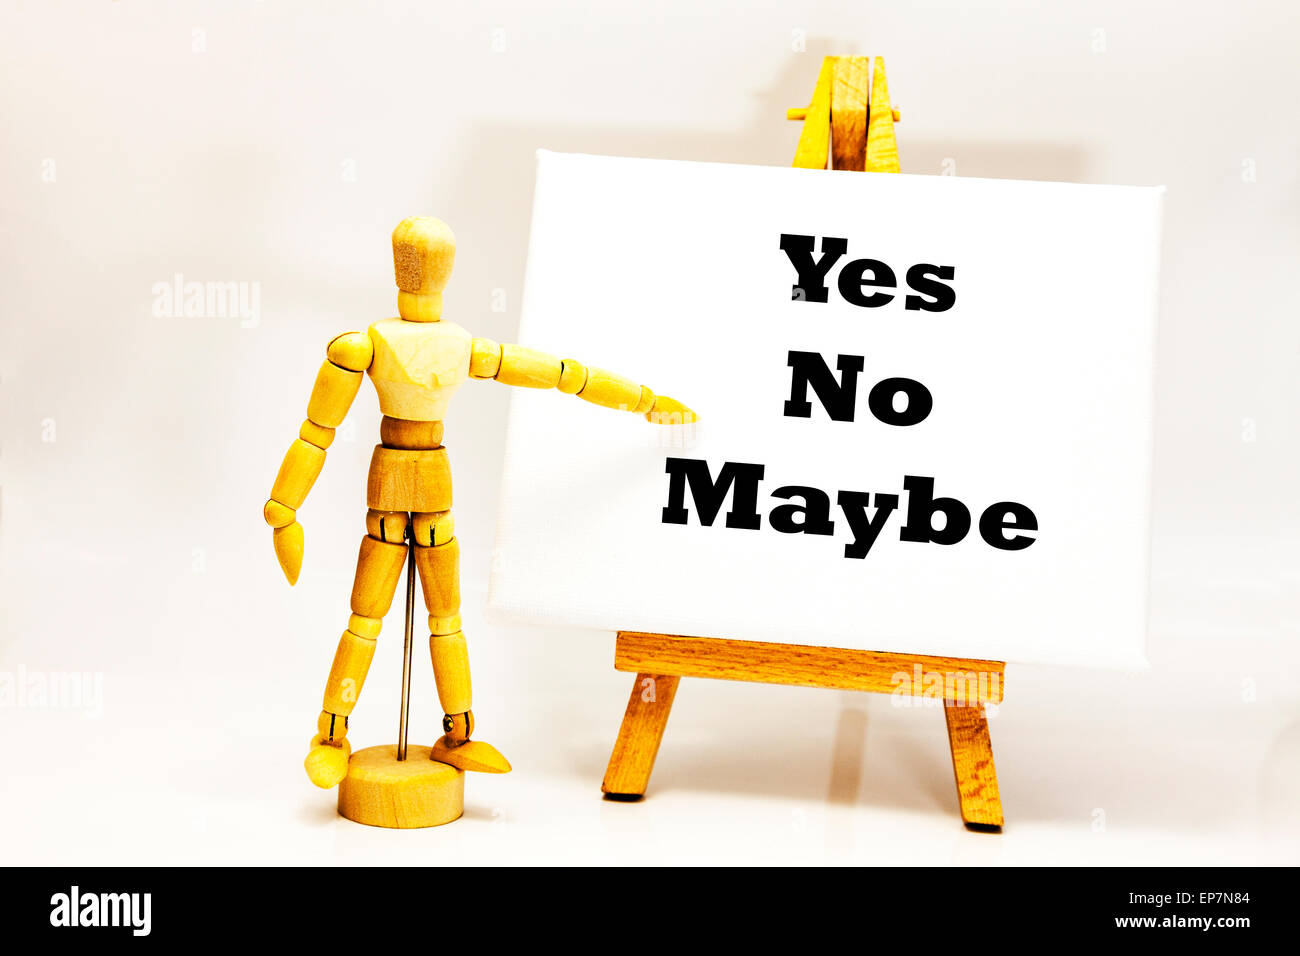 Hölzerne Mann mit weißen Tafel zeigt auf Wörter, die "Ja Nein vielleicht" Entscheidung Entscheidungen Wahl wählen wählen Sie nimmt Entscheidungen die man Stockfoto